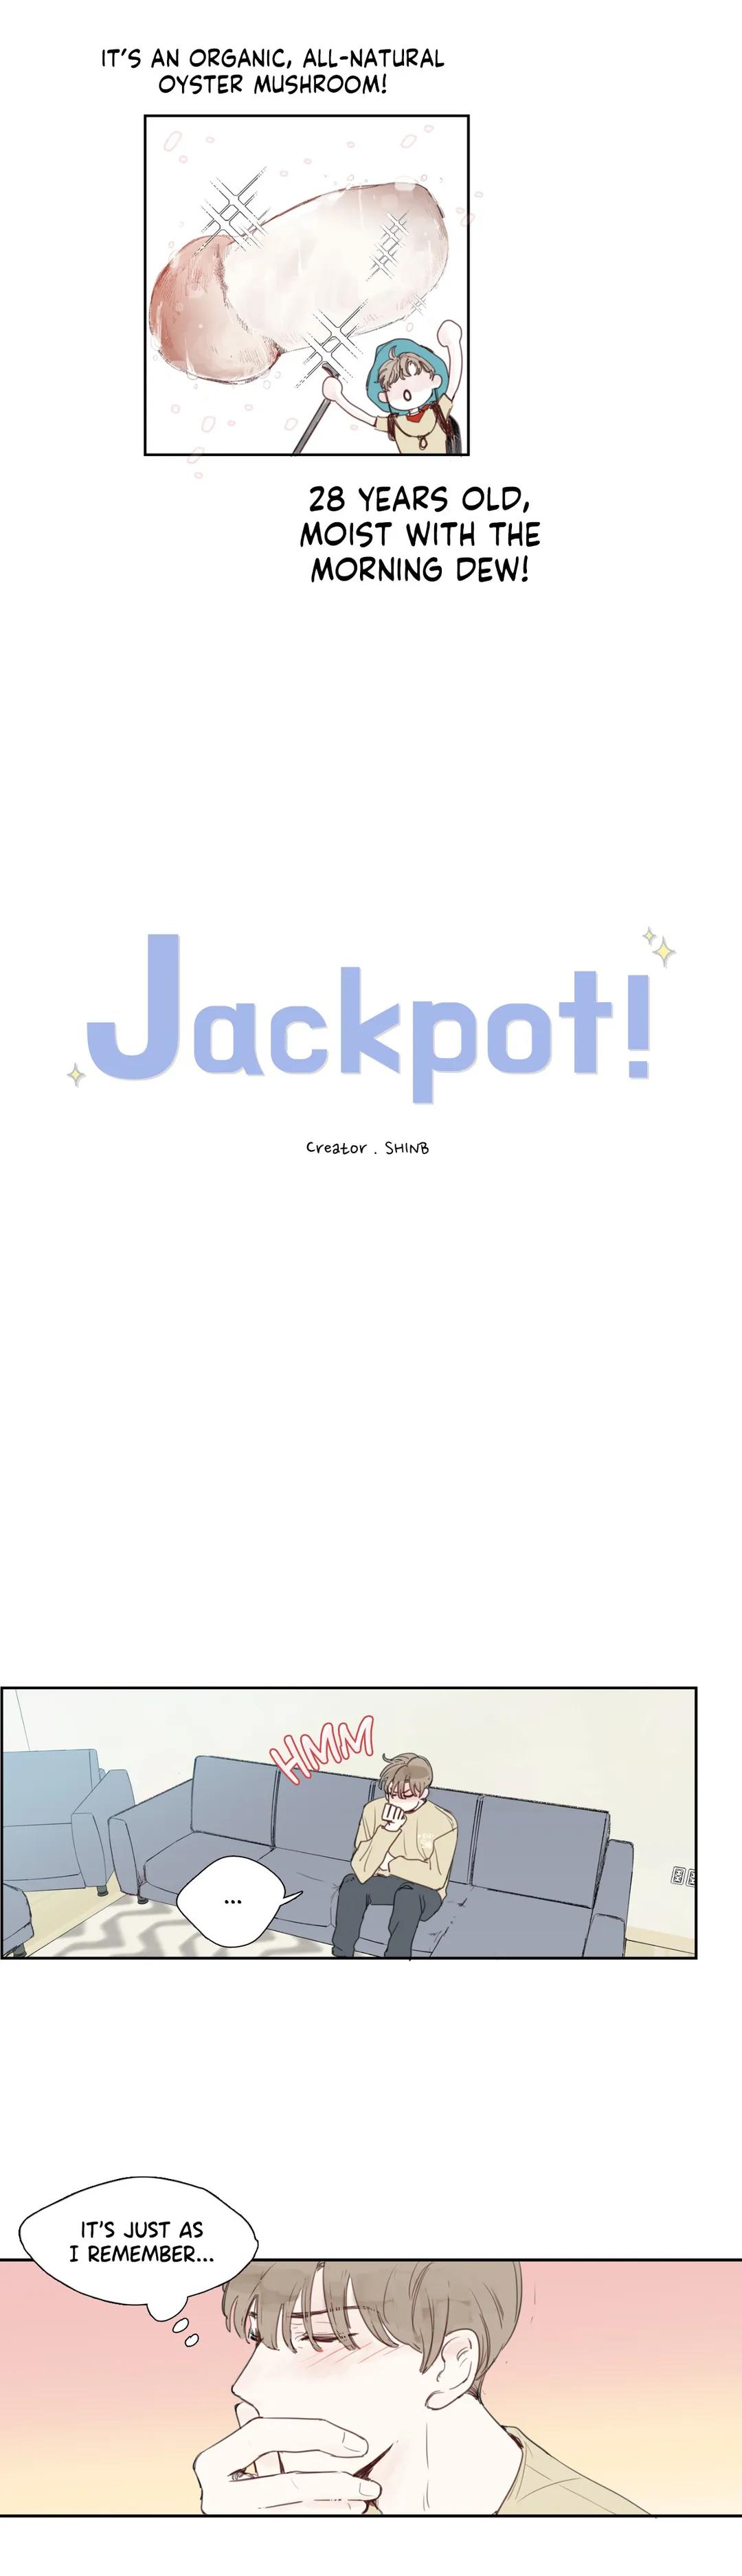 Jackpot! - Page 3